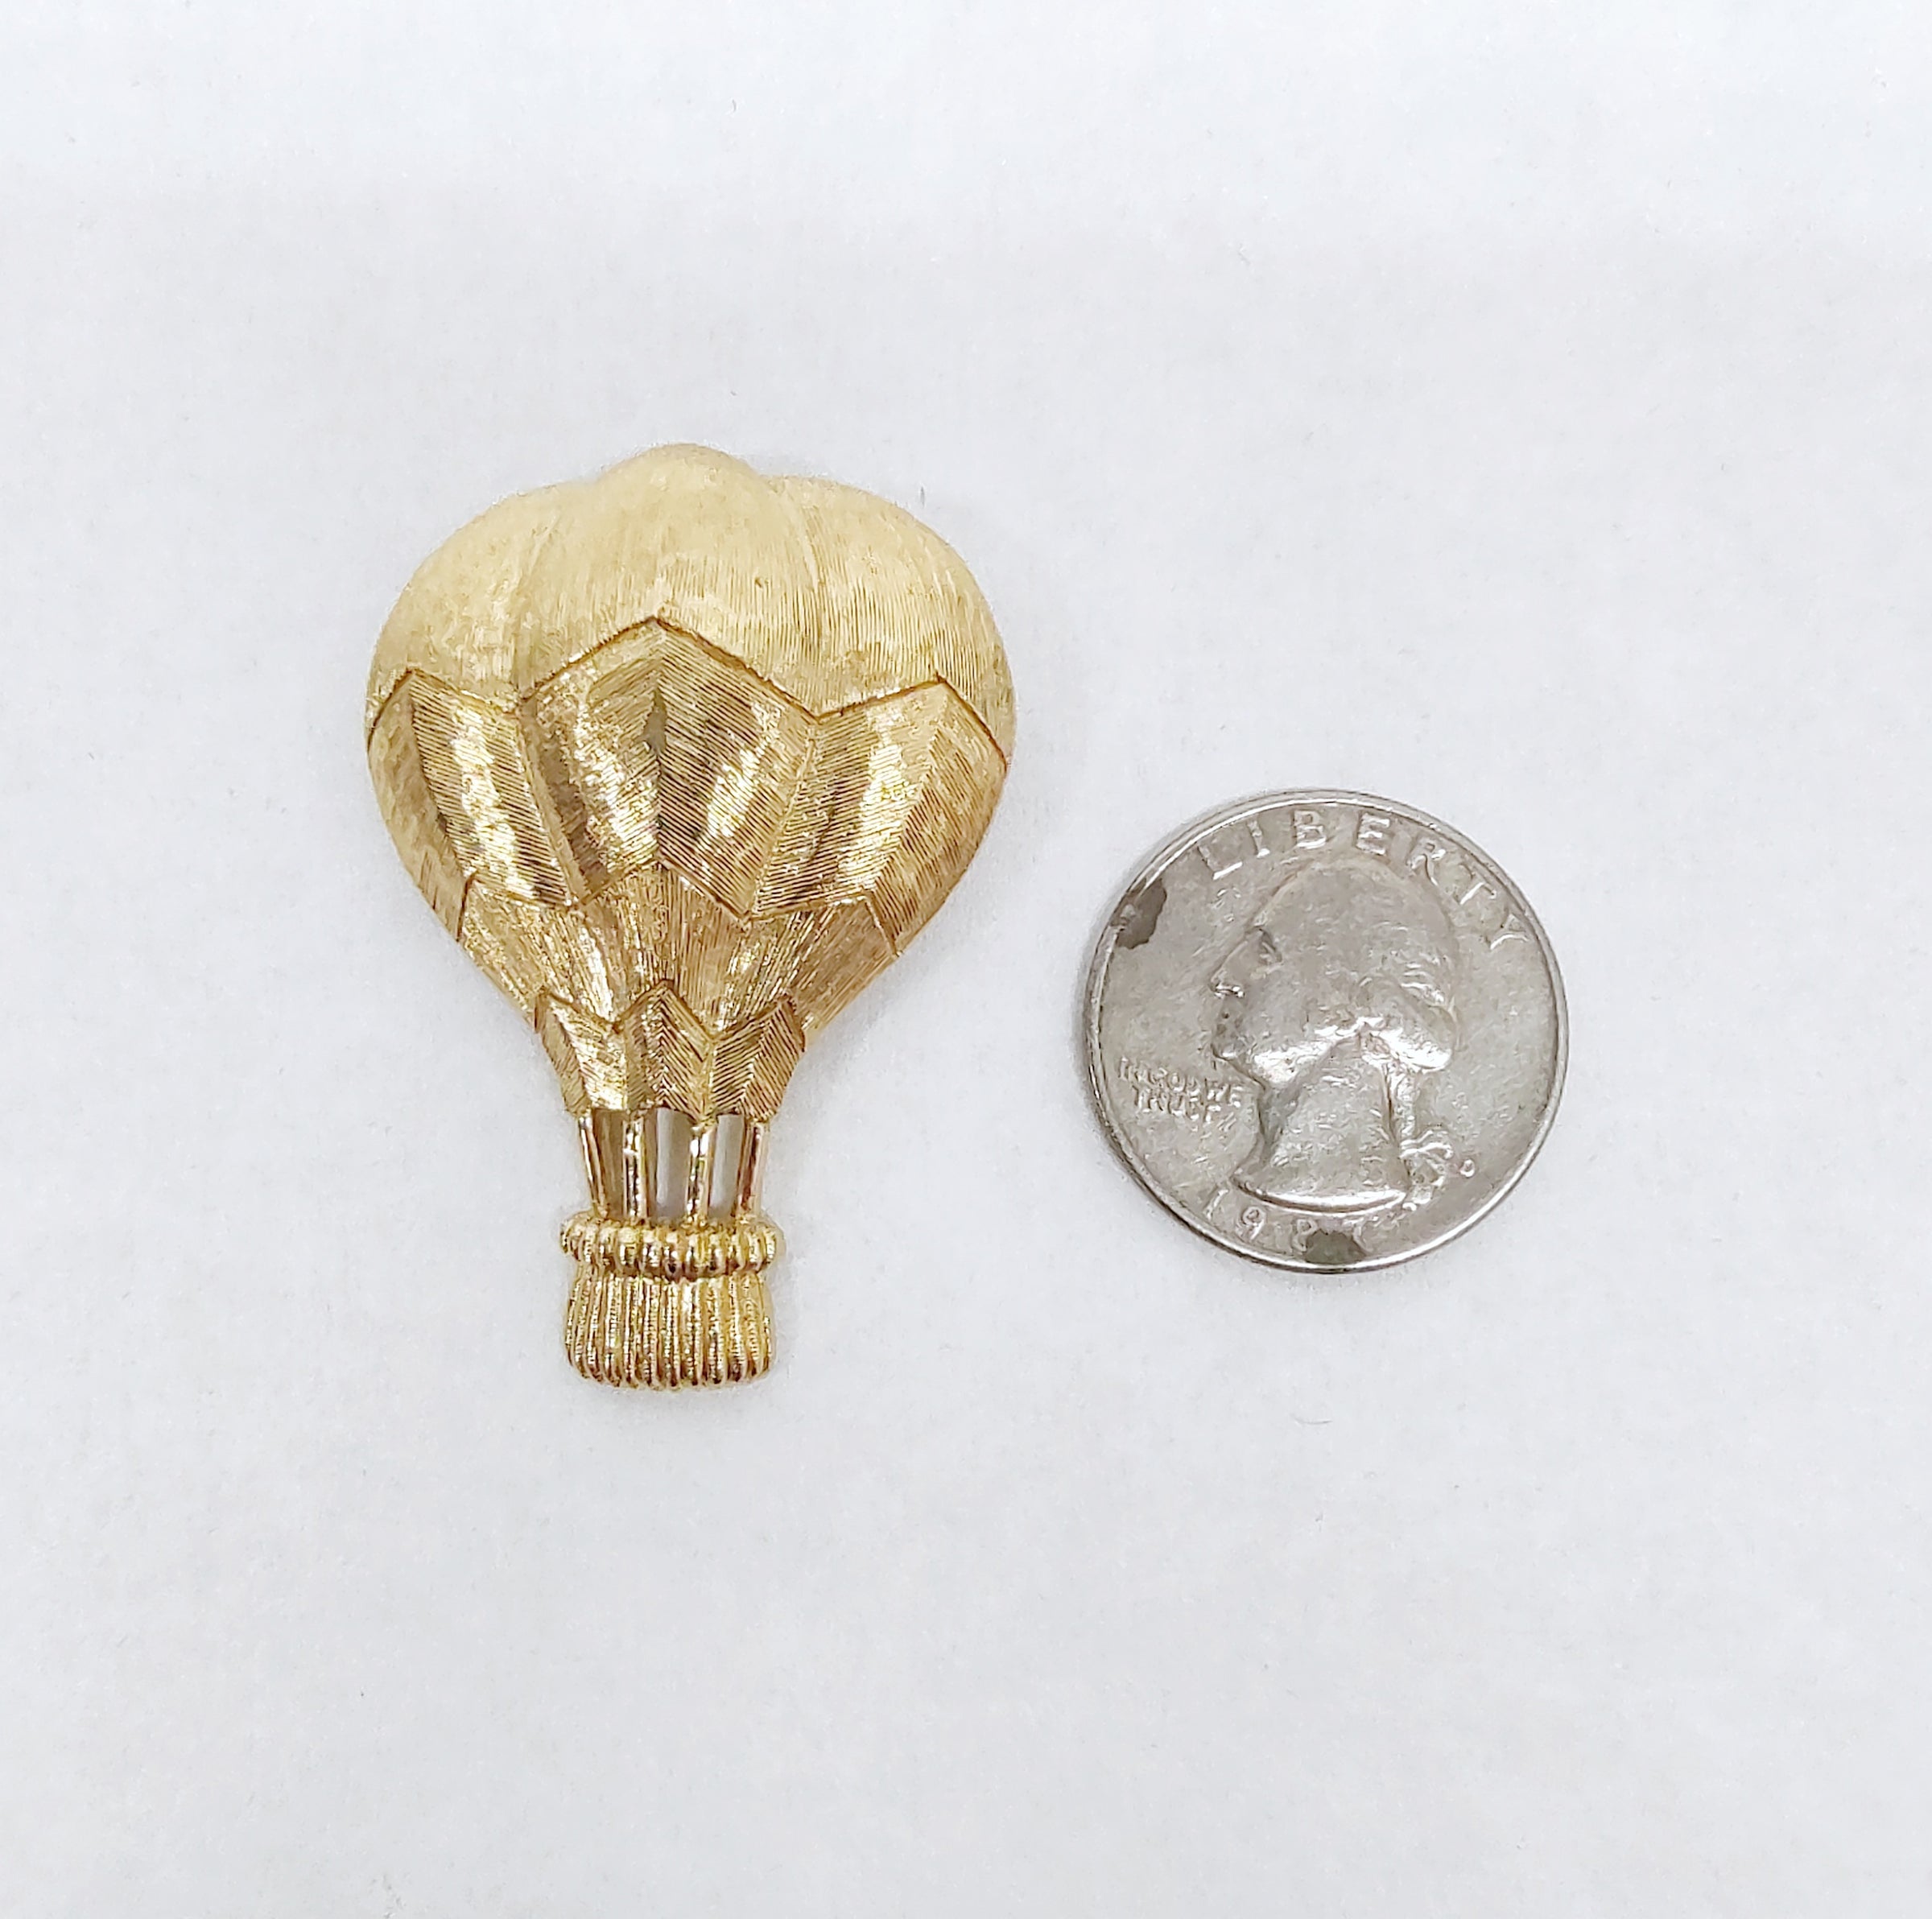 Trifari Hot Air Balloon Gold Tone Brooch Pin - Hers and His Treasures